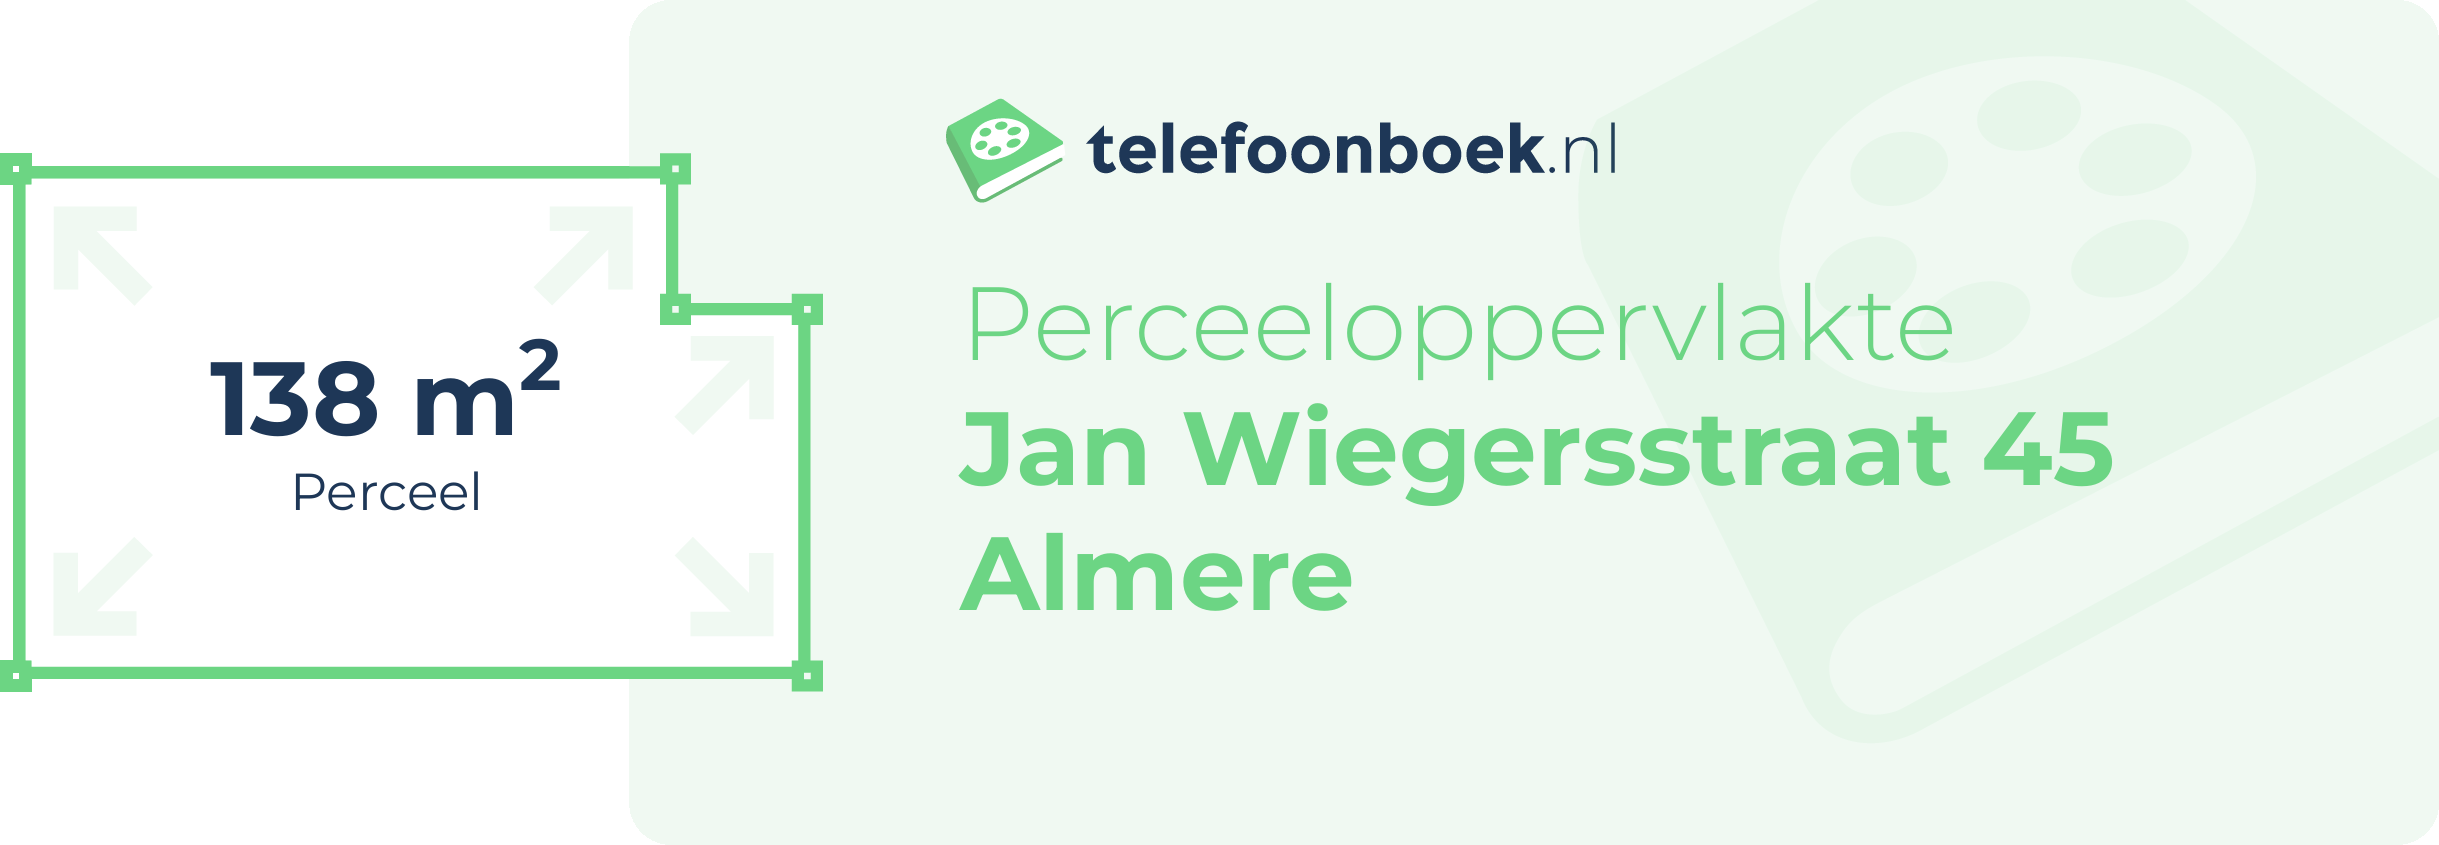 Perceeloppervlakte Jan Wiegersstraat 45 Almere